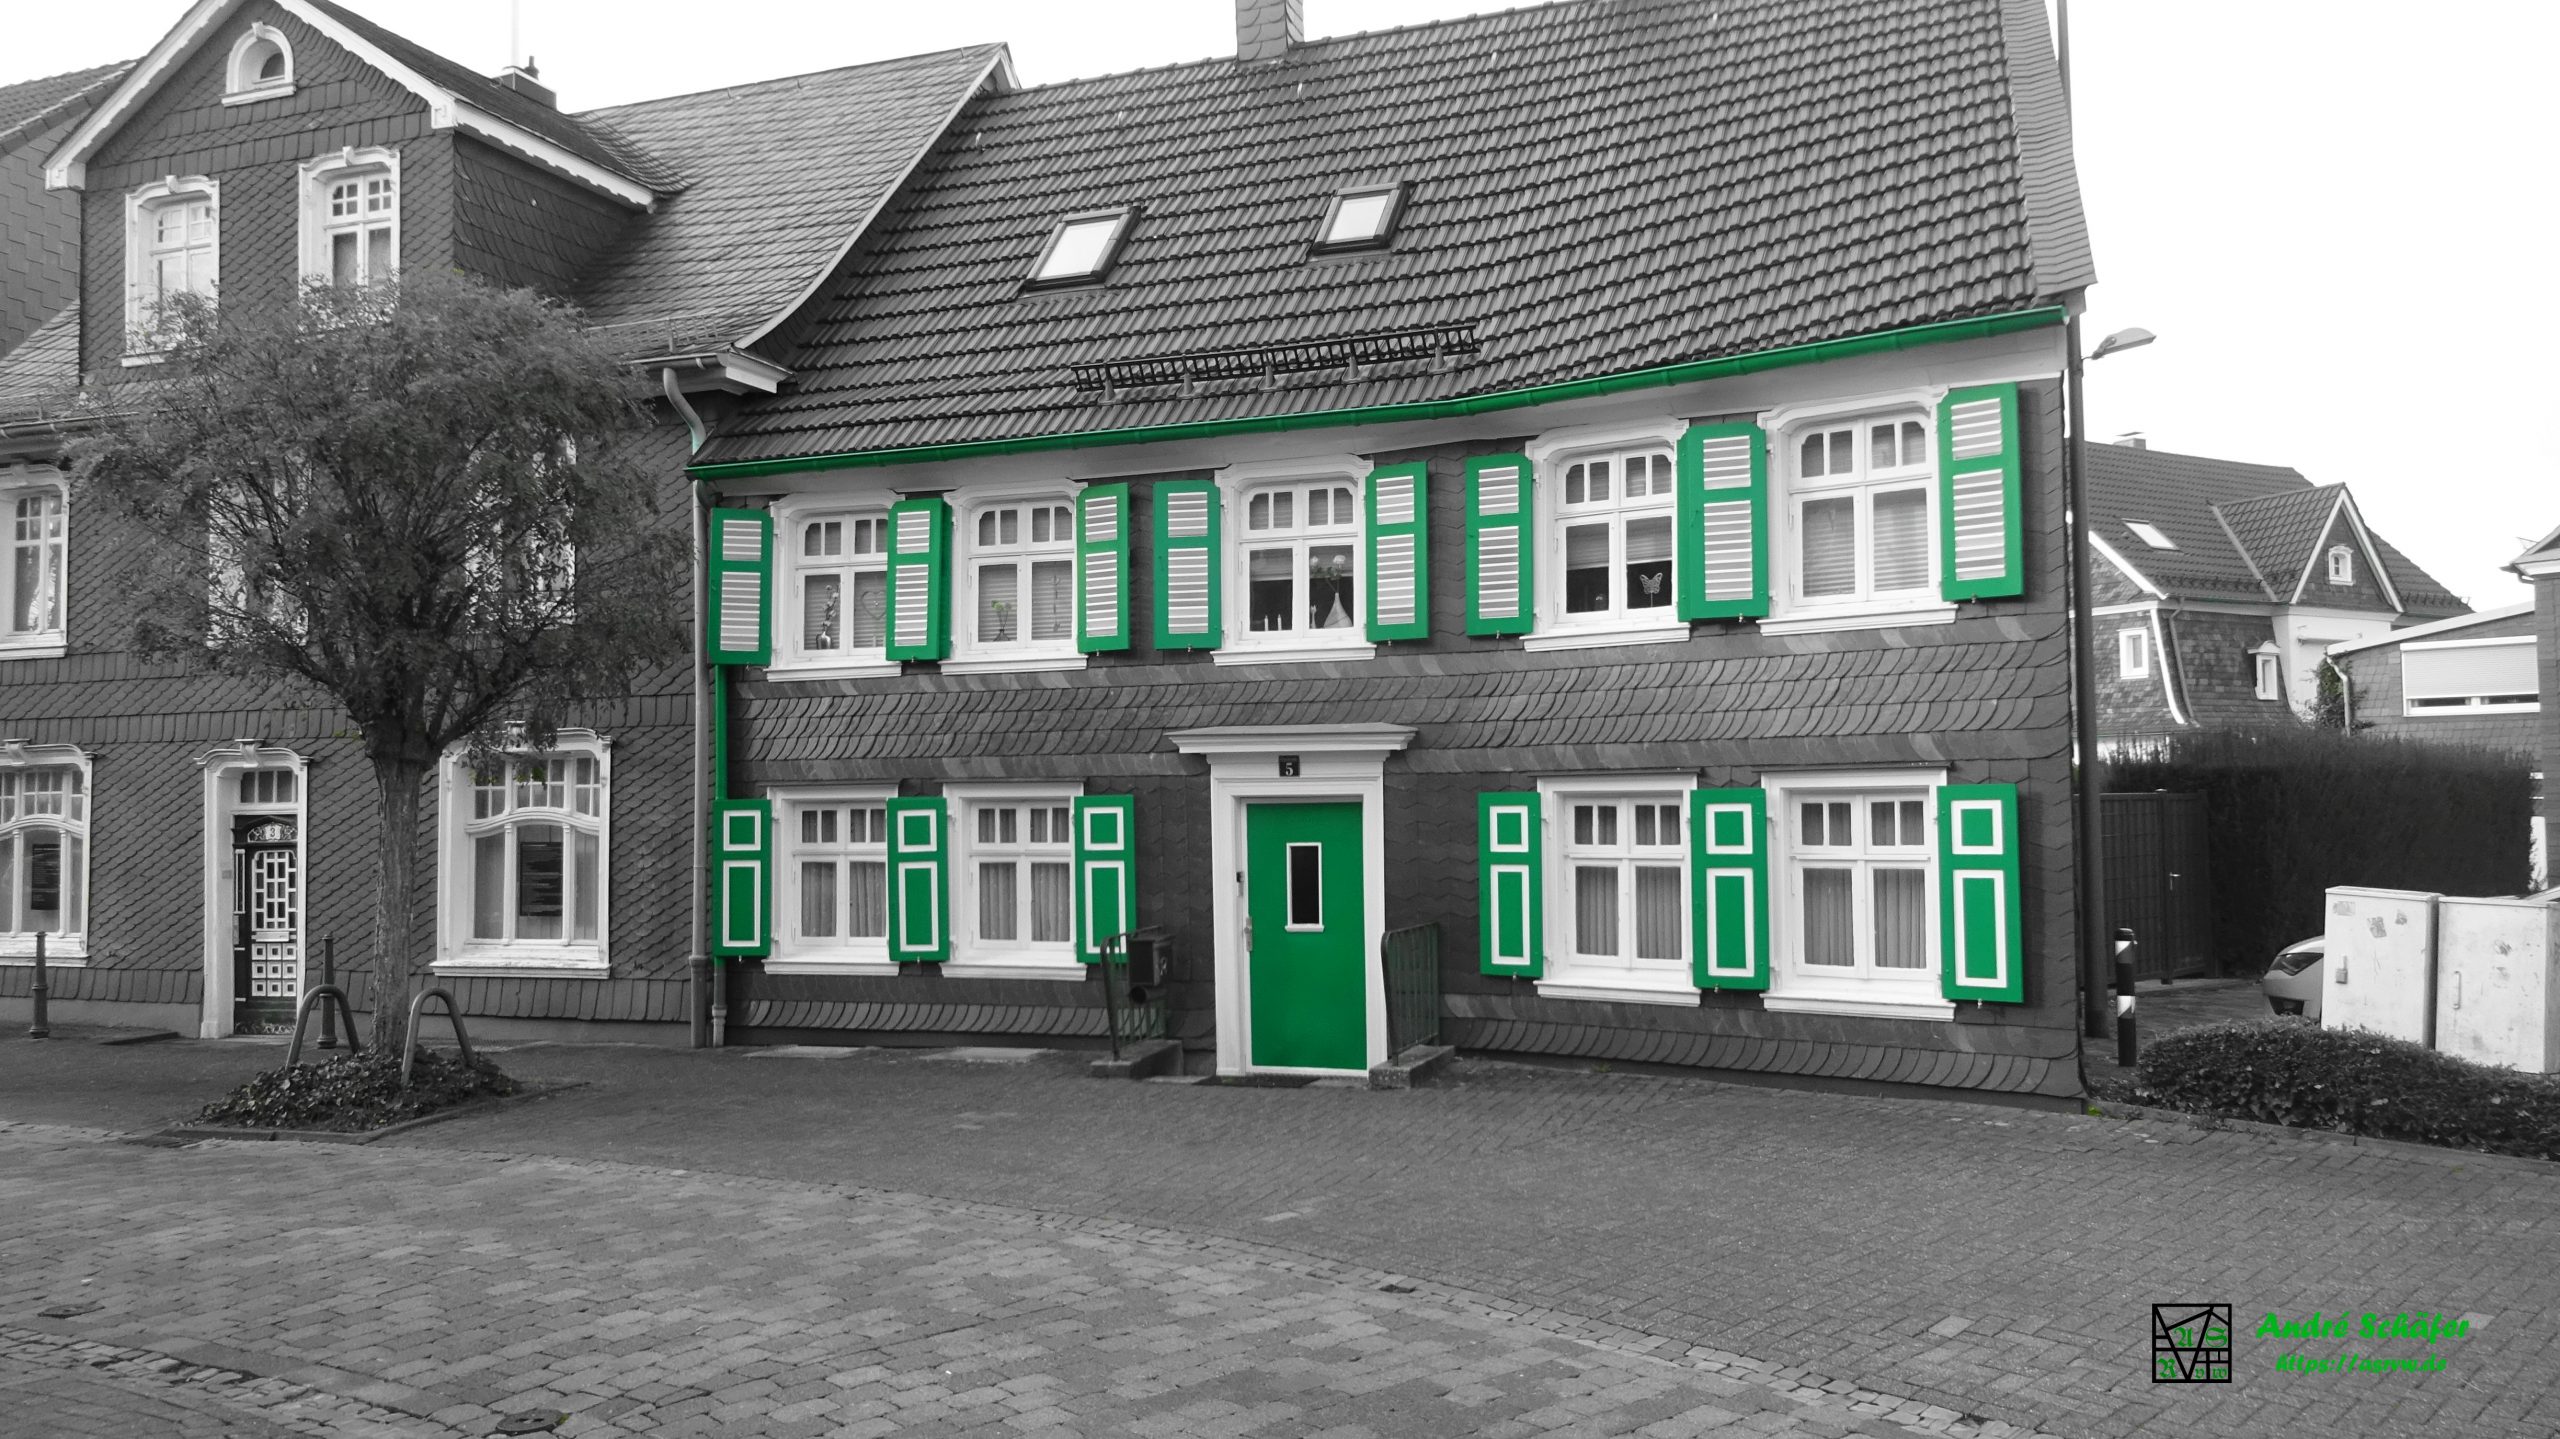 Haus Oststraße 5, Radevormwald, Bergisches Schieferhaus mit den typischen grünen Schlagläden, Schwarz-Weiß Bild mit grüner Teiltonung.